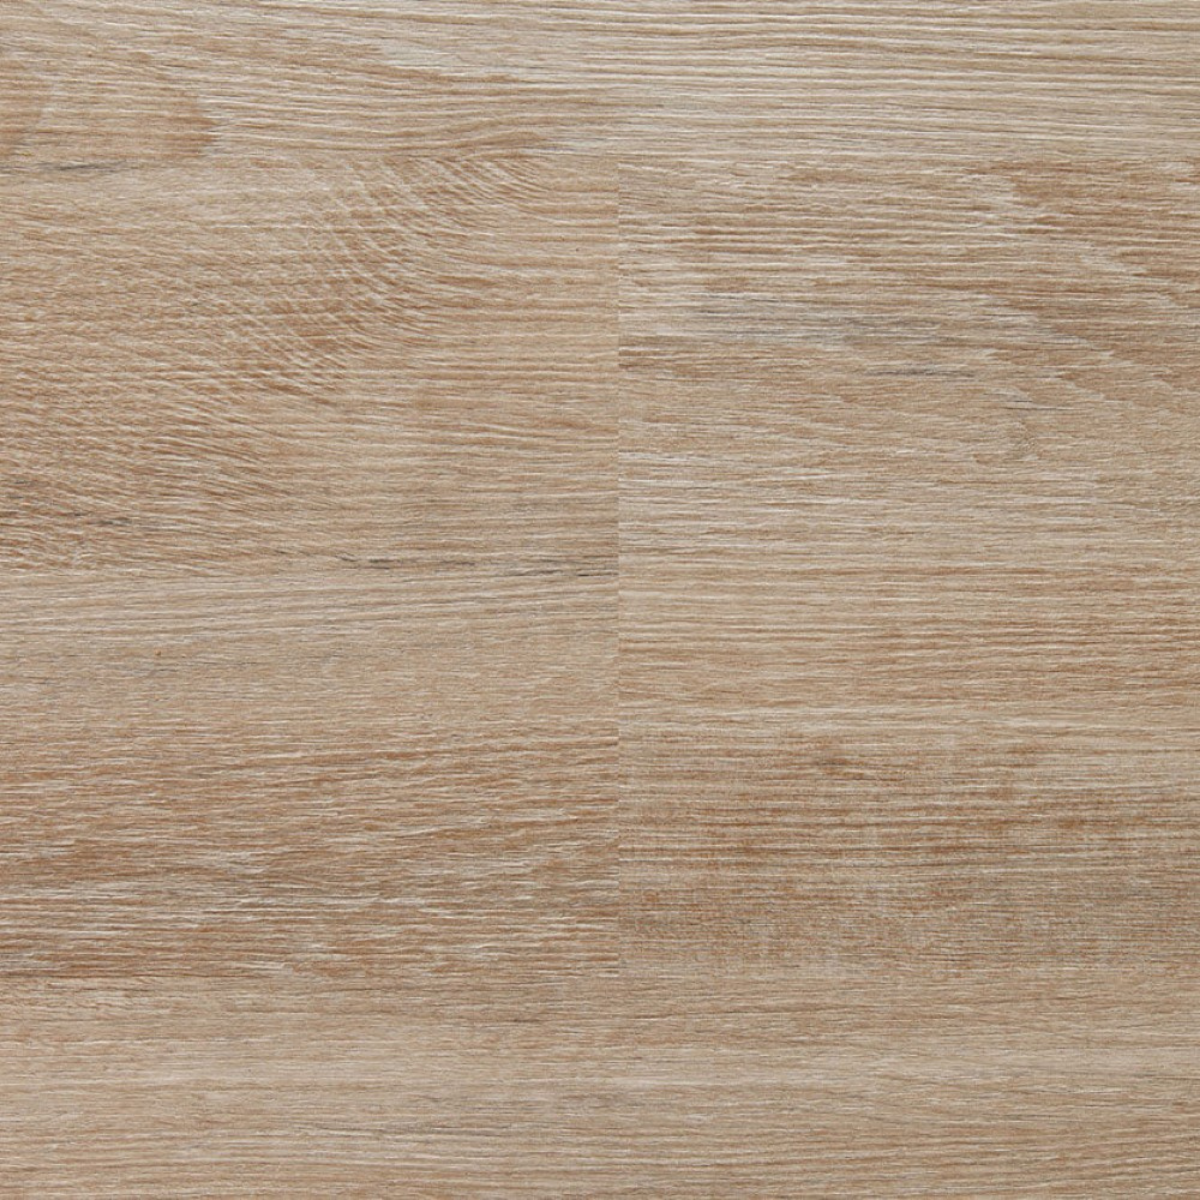 Polymerní  podlaha plovoucí Premier Wood Kompozit Tavira